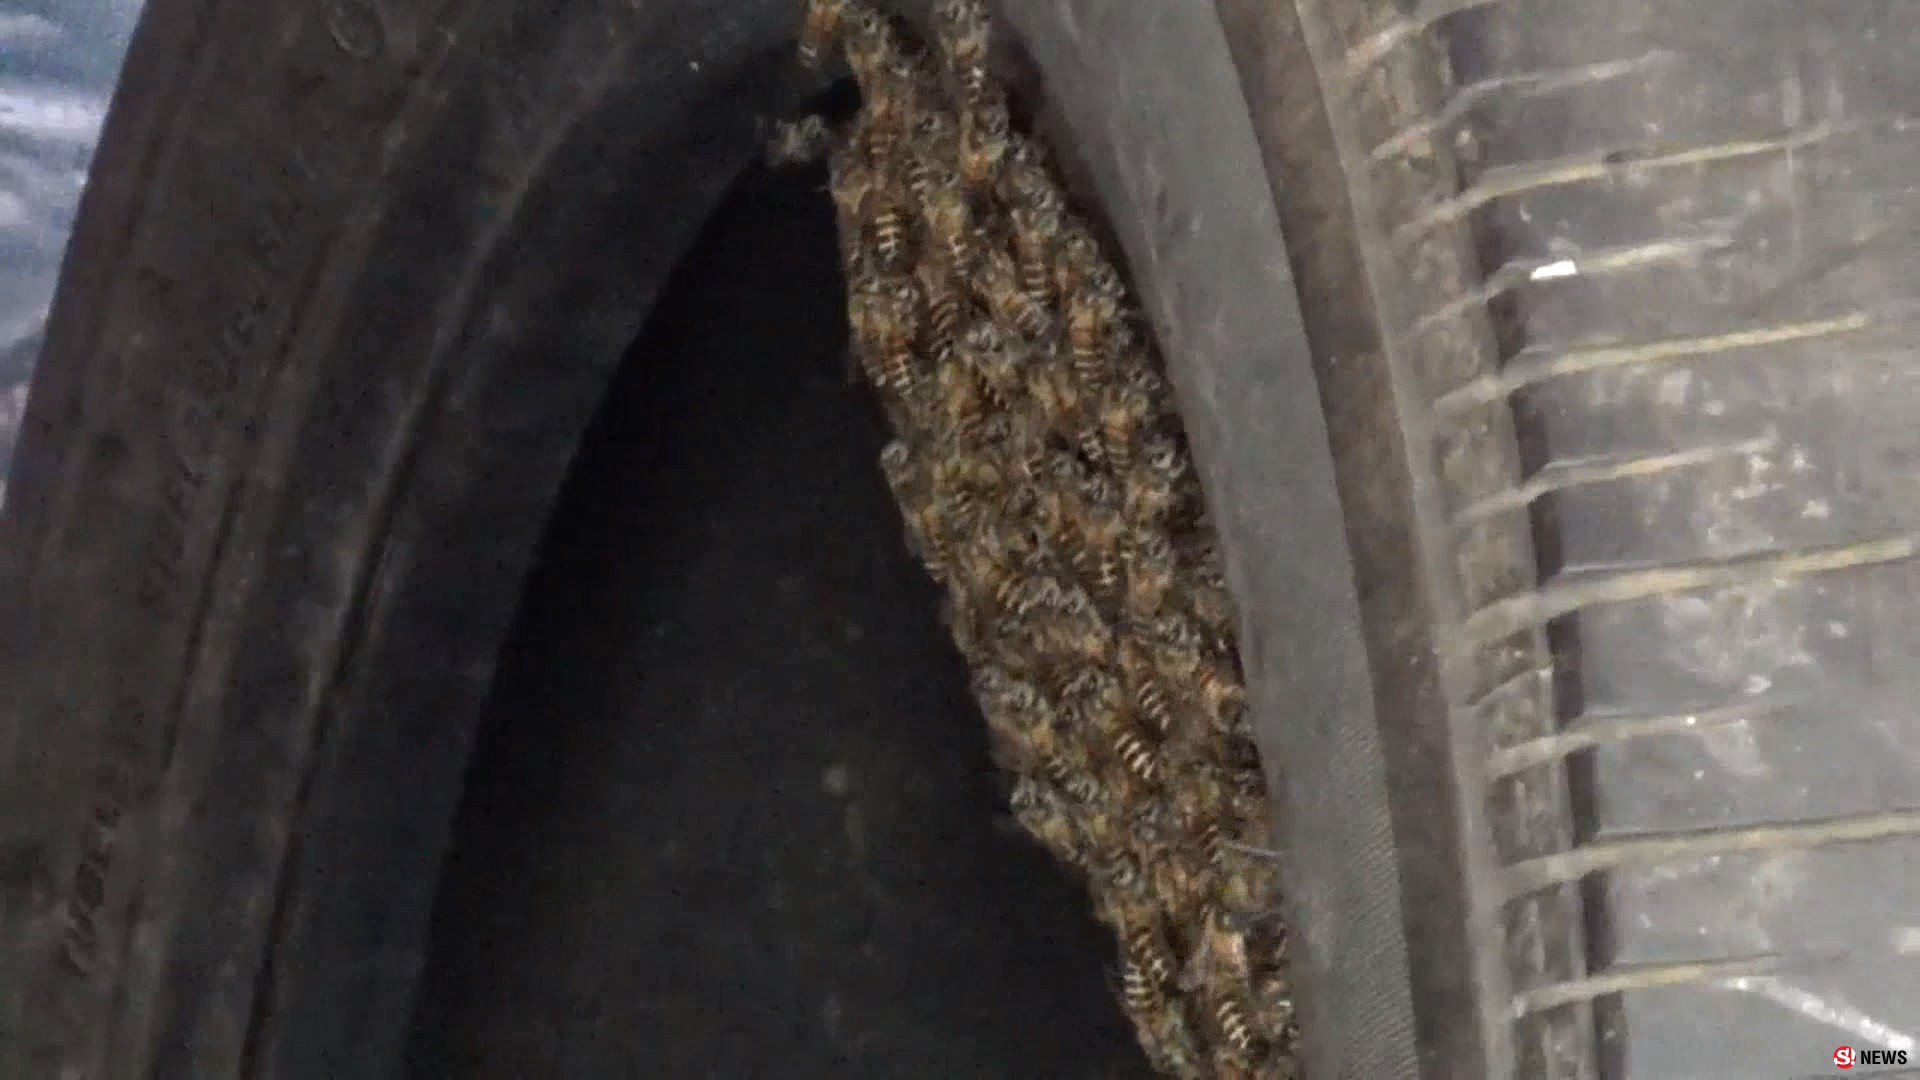 พบฝูงผึ้งทำรังในยางรถยนต์ เจ้าของร้านบอก เป็นผึ้งให้โชคลาภไม่เคยทำร้ายใคร